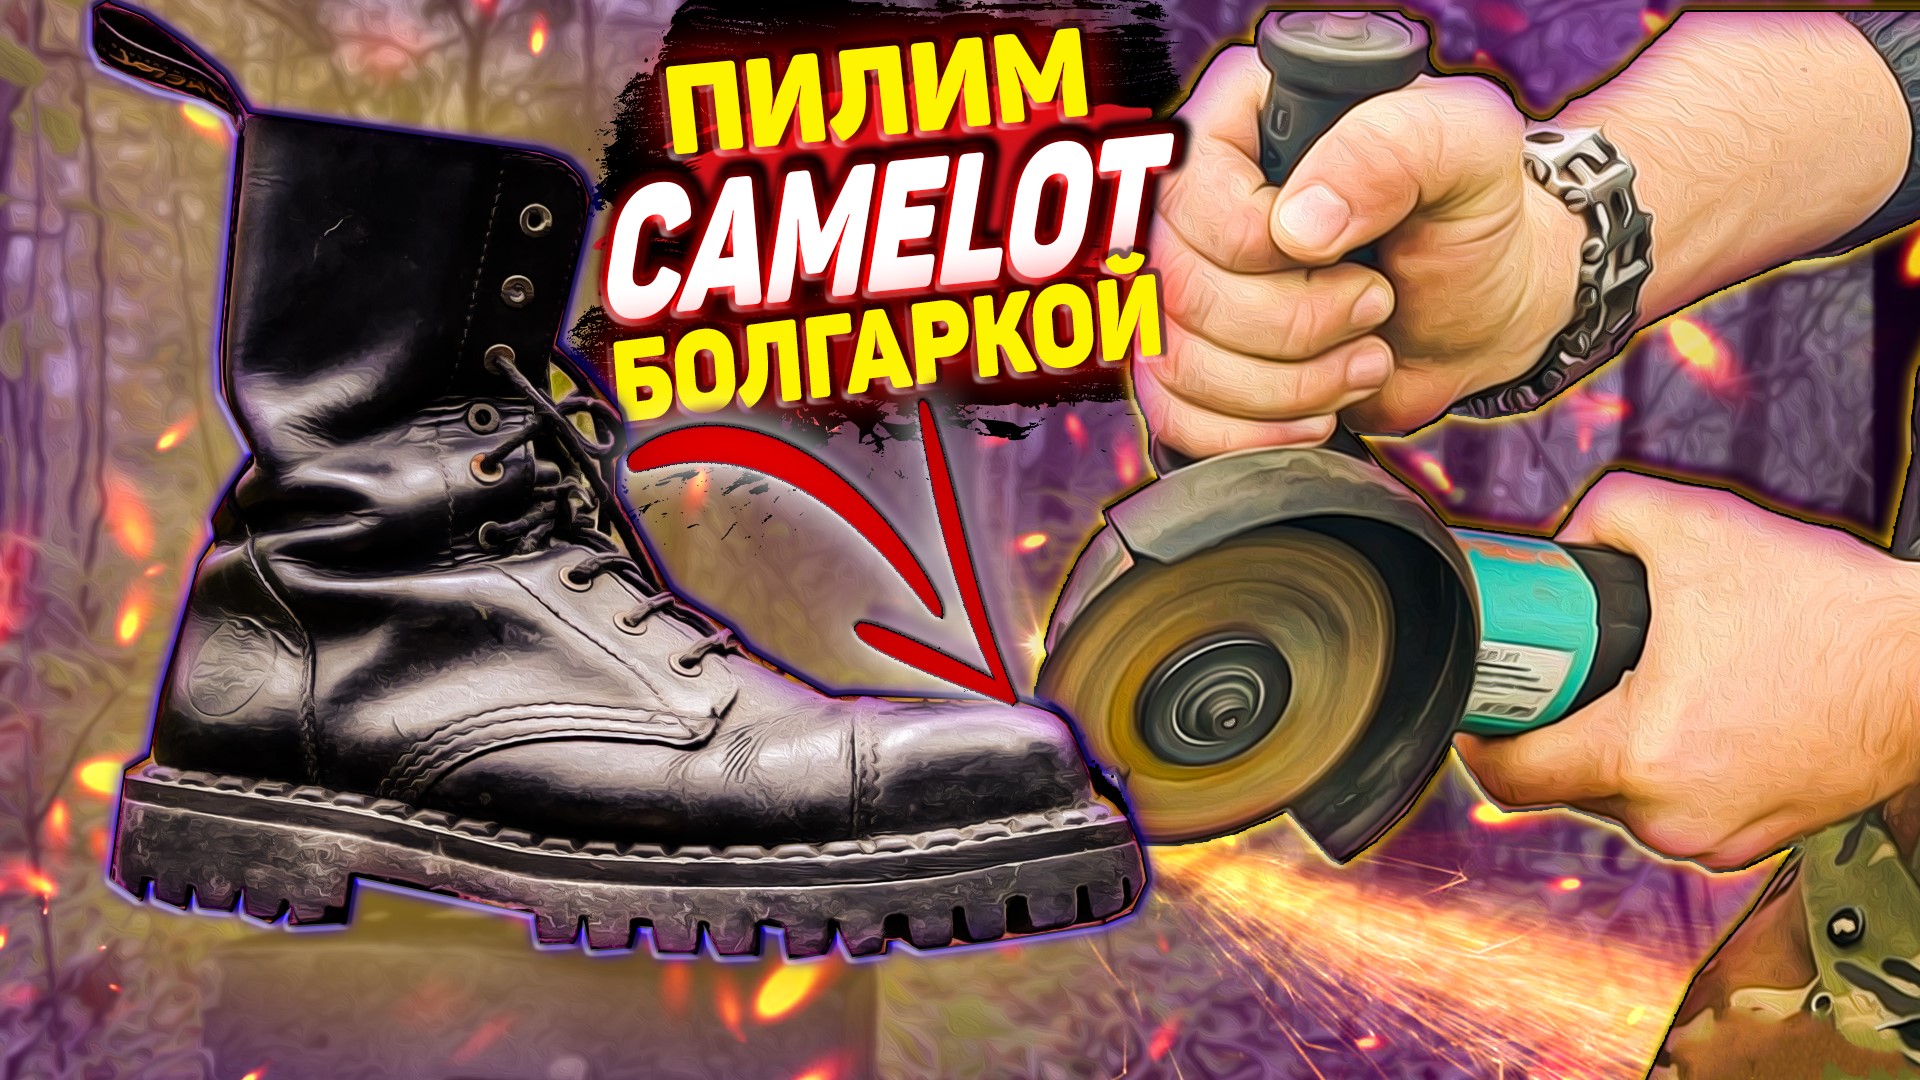 Пилим болгаркой ботинки Camelot, как устроены ботинки с железным мыском - краш тест